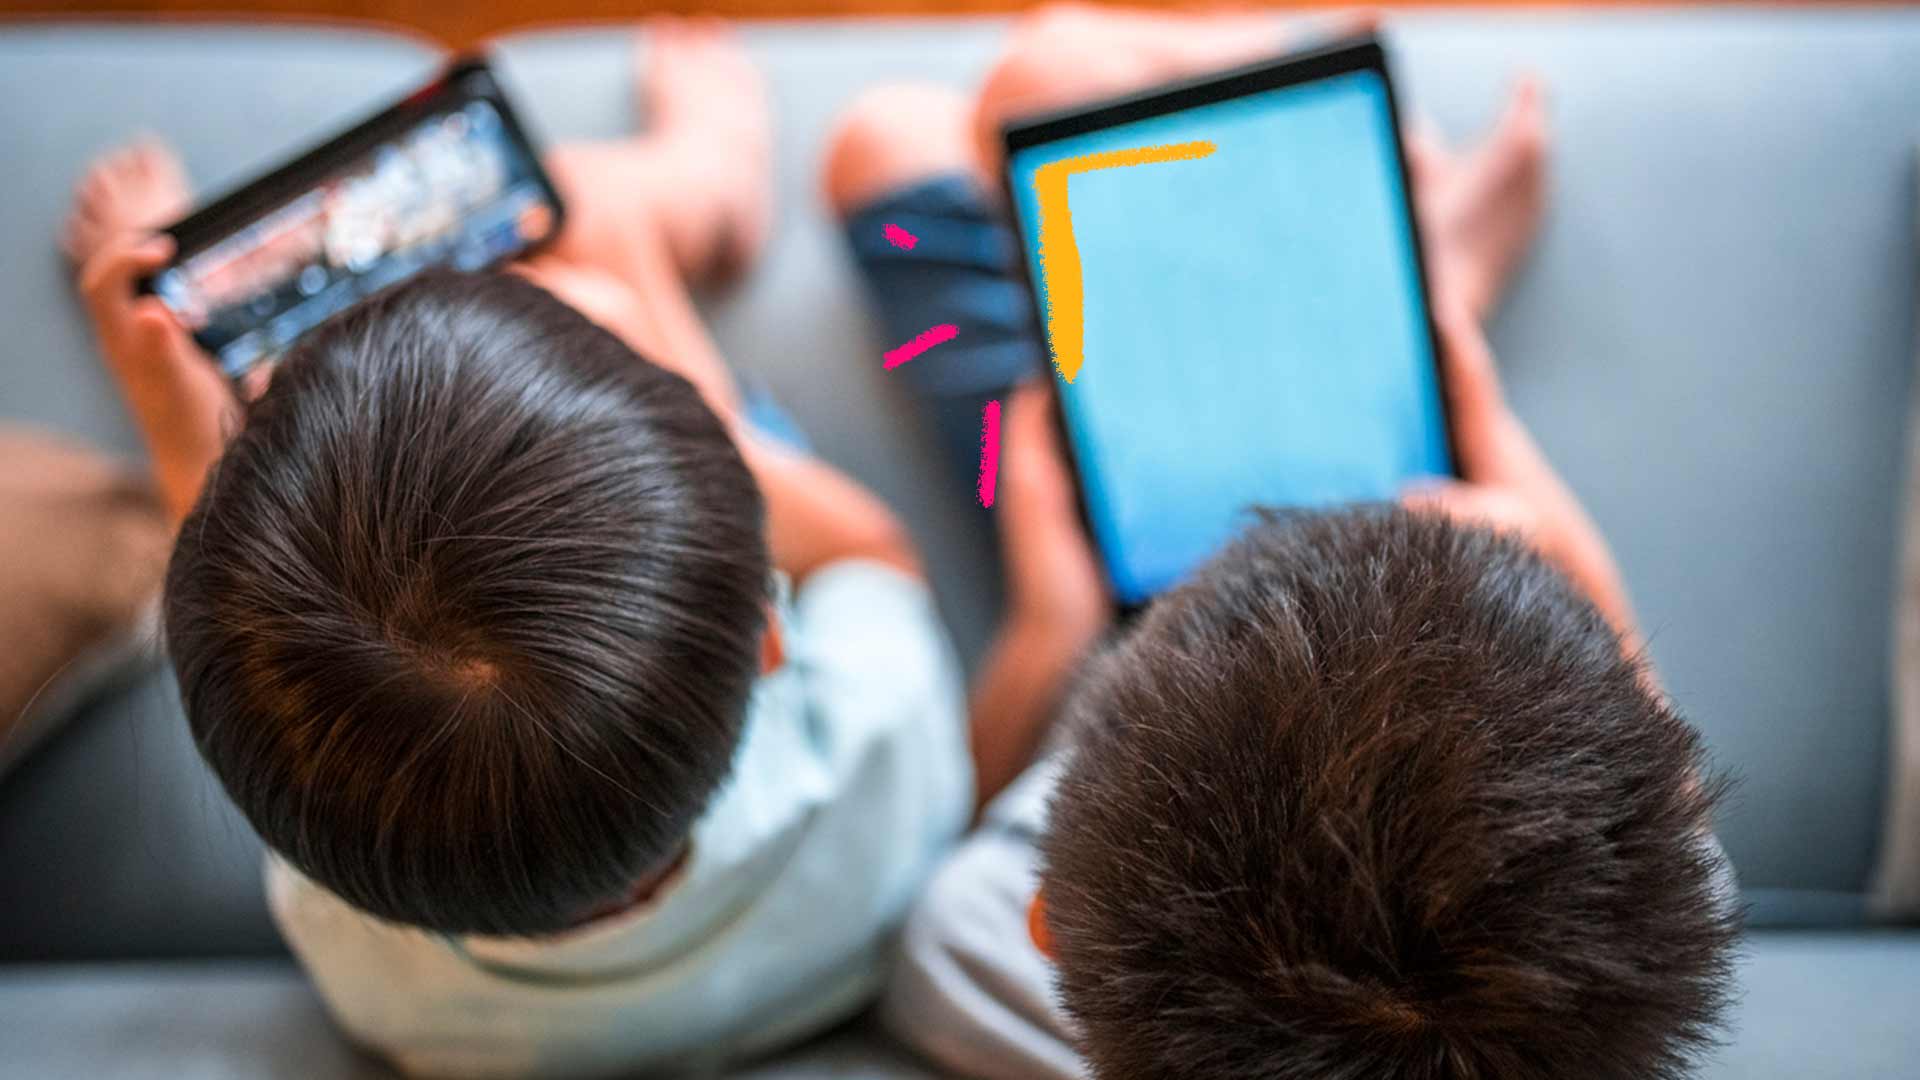 Foto captada de cima mostra dois meninos de costas sentados no sofá, cada uma com um aparelho eletrônico nas mãos. Um tablet e um celular.